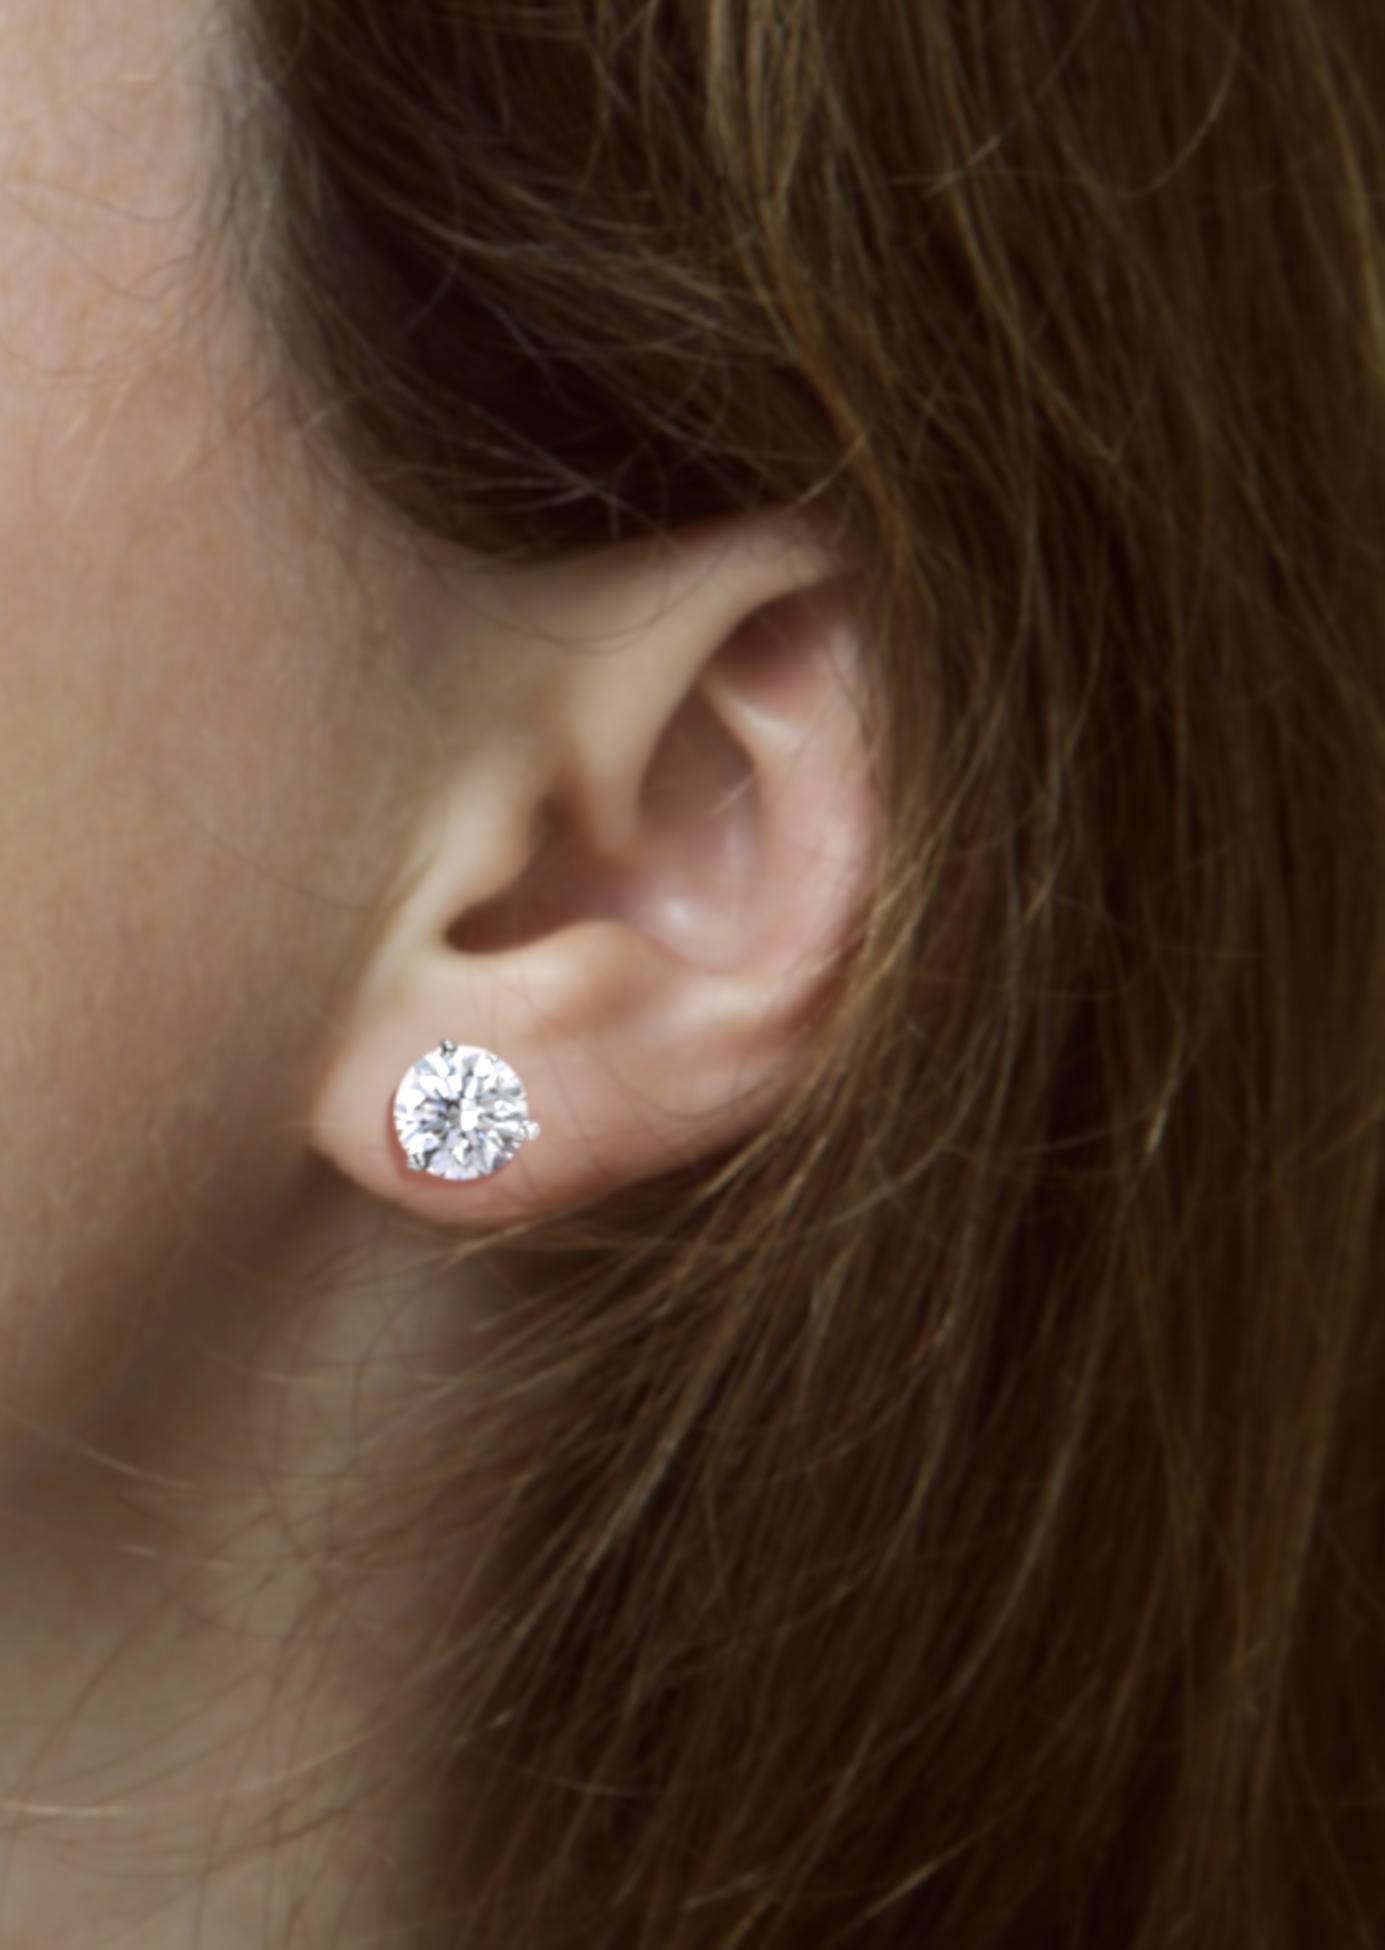 flawless diamond earrings